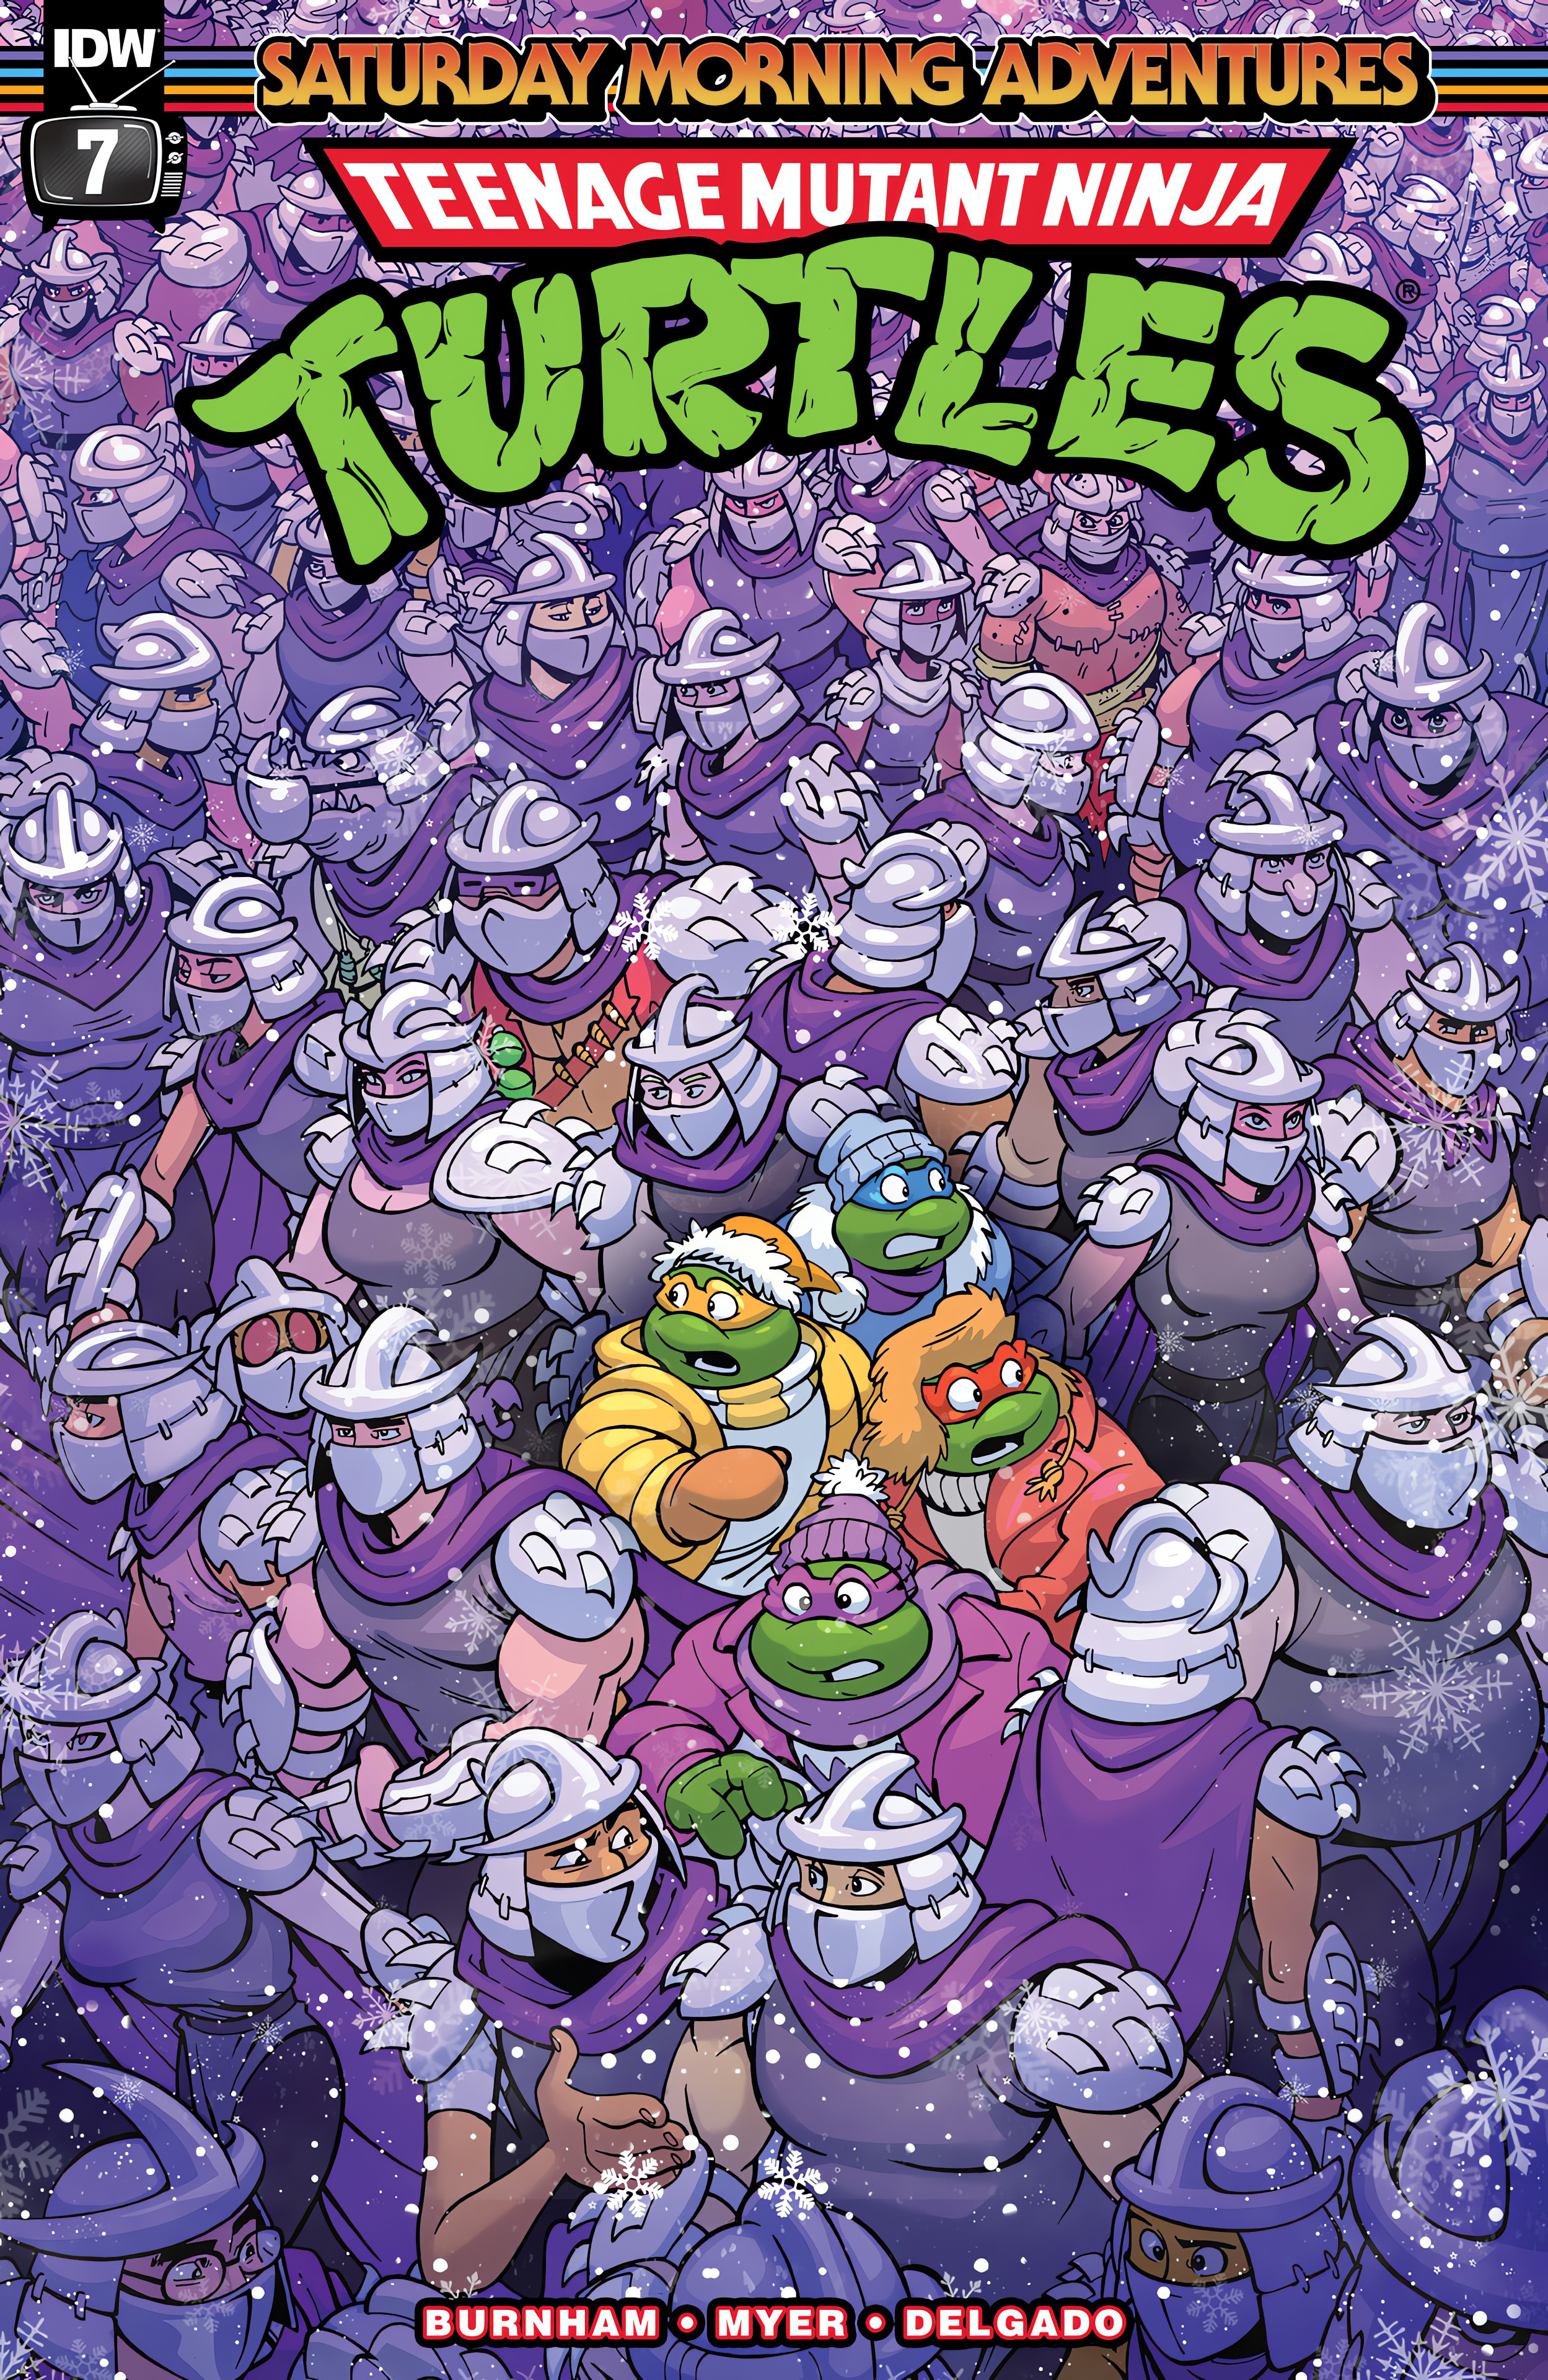 Teenage Mutant Ninja Turtles: Saturday Morning Adventures Continued issue 7 - Page 1